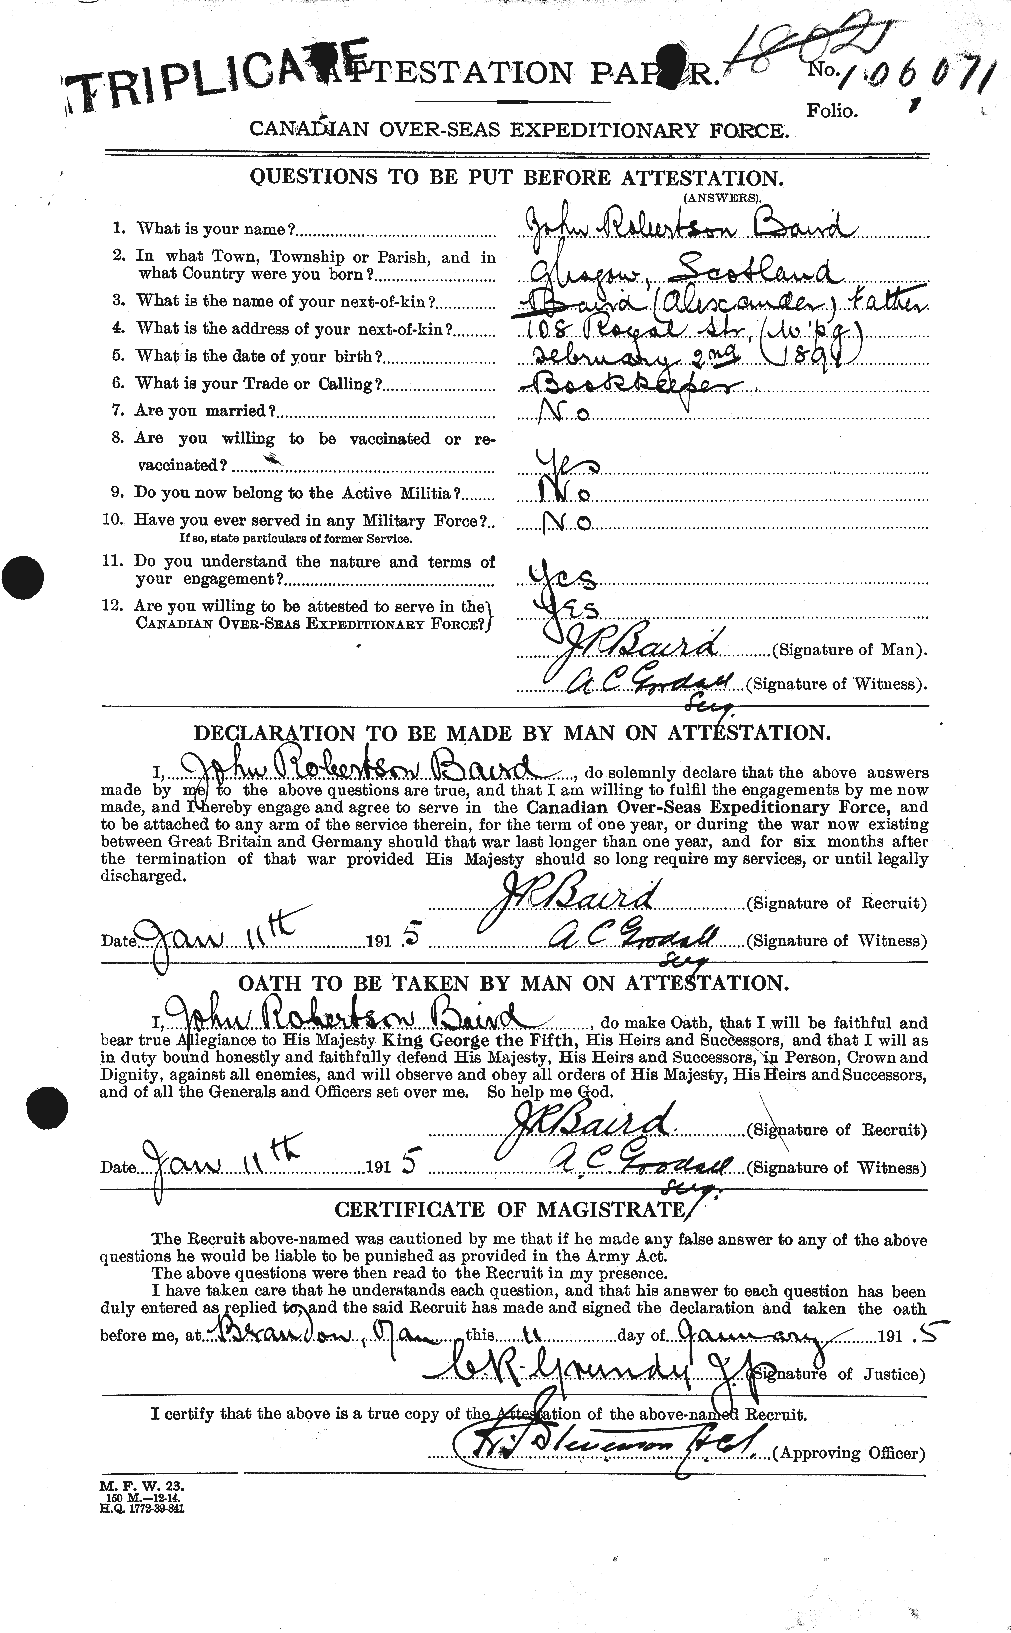 Dossiers du Personnel de la Première Guerre mondiale - CEC 226609a